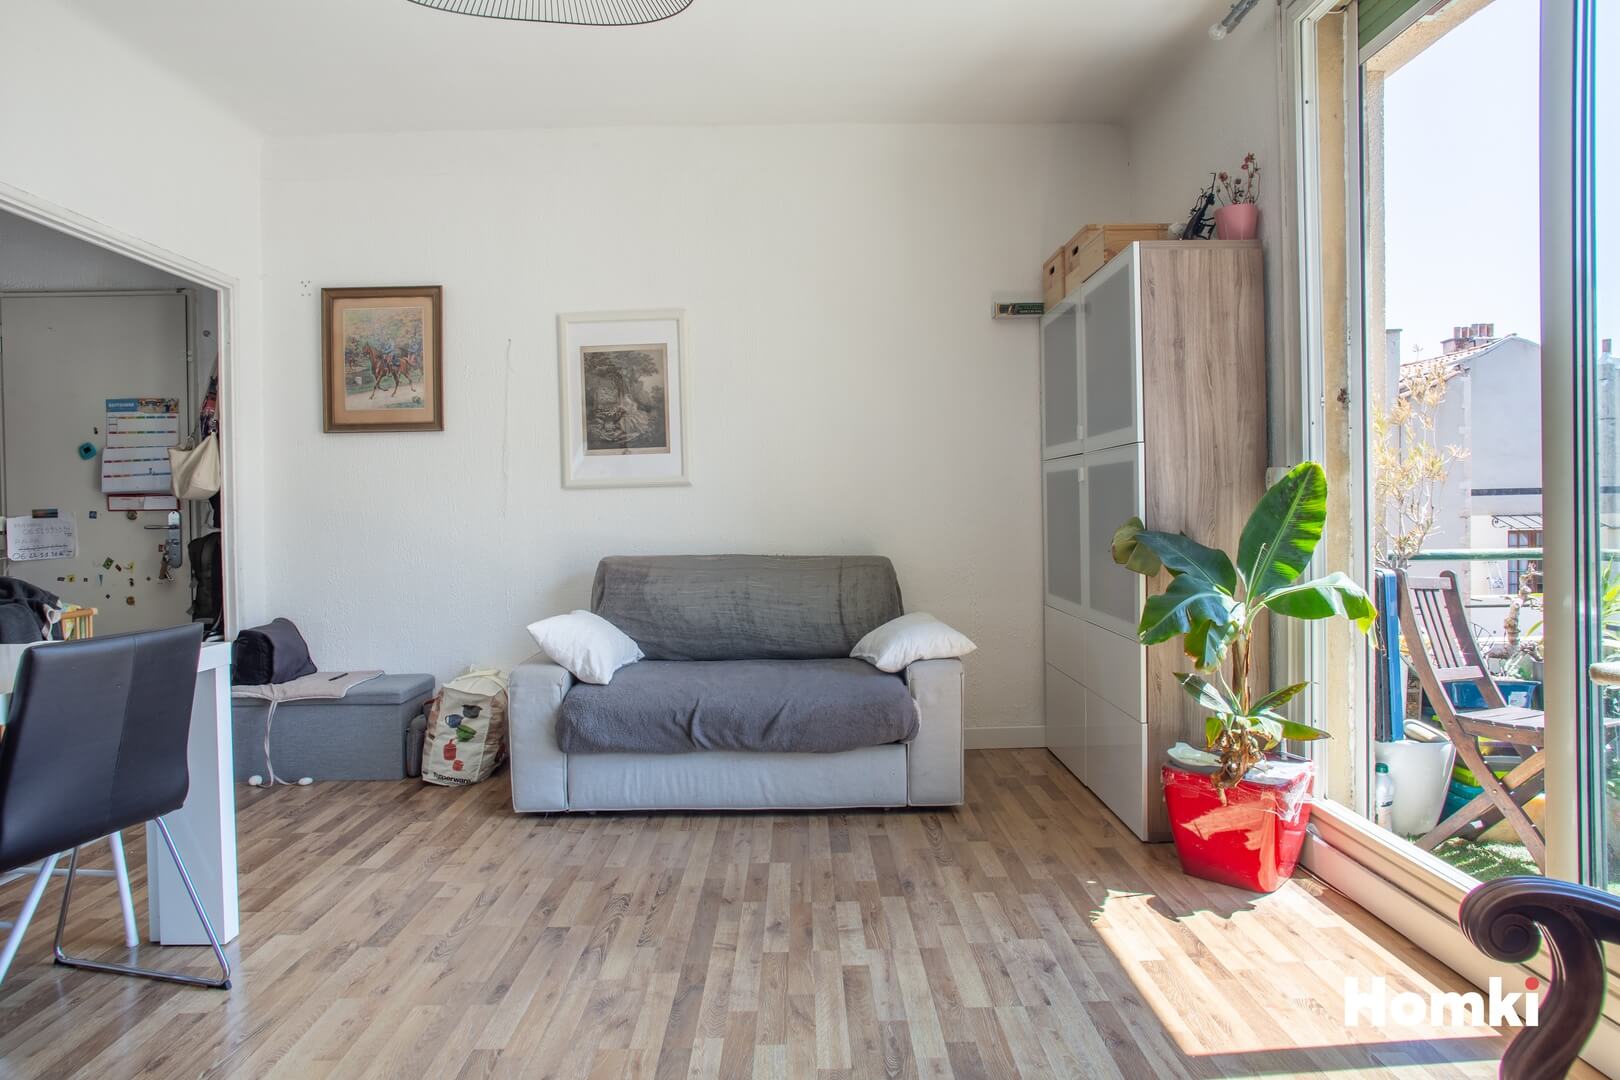 Homki - Vente Appartement  de 68.0 m² à Marseille 13006